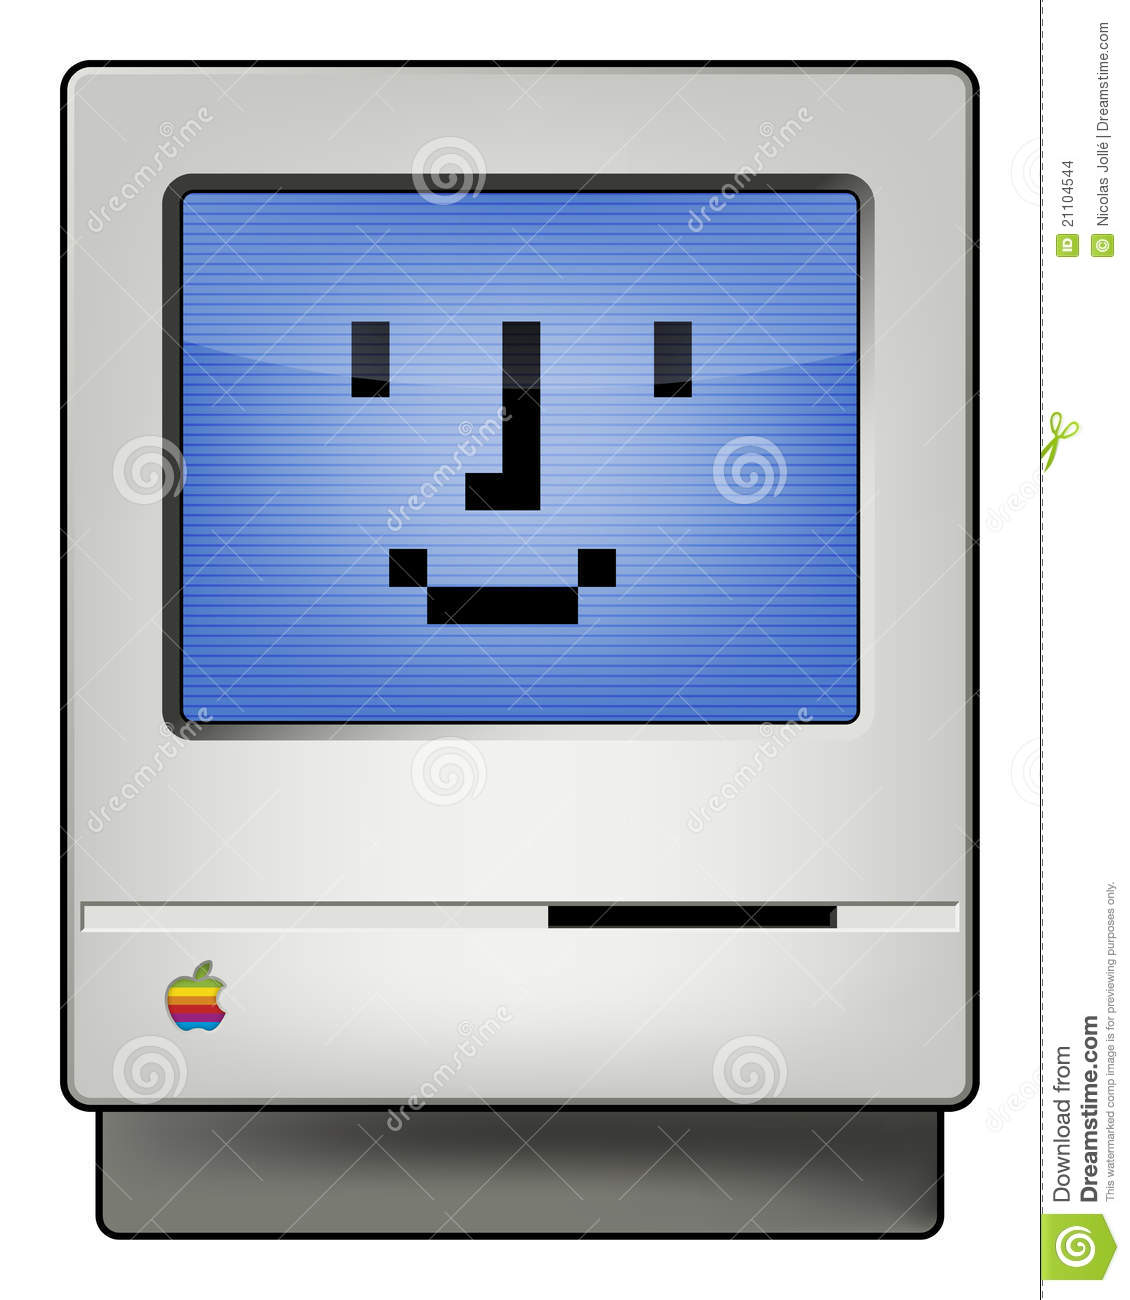 Mac Computer Clip Art Clipart Panda Free Clipart Images